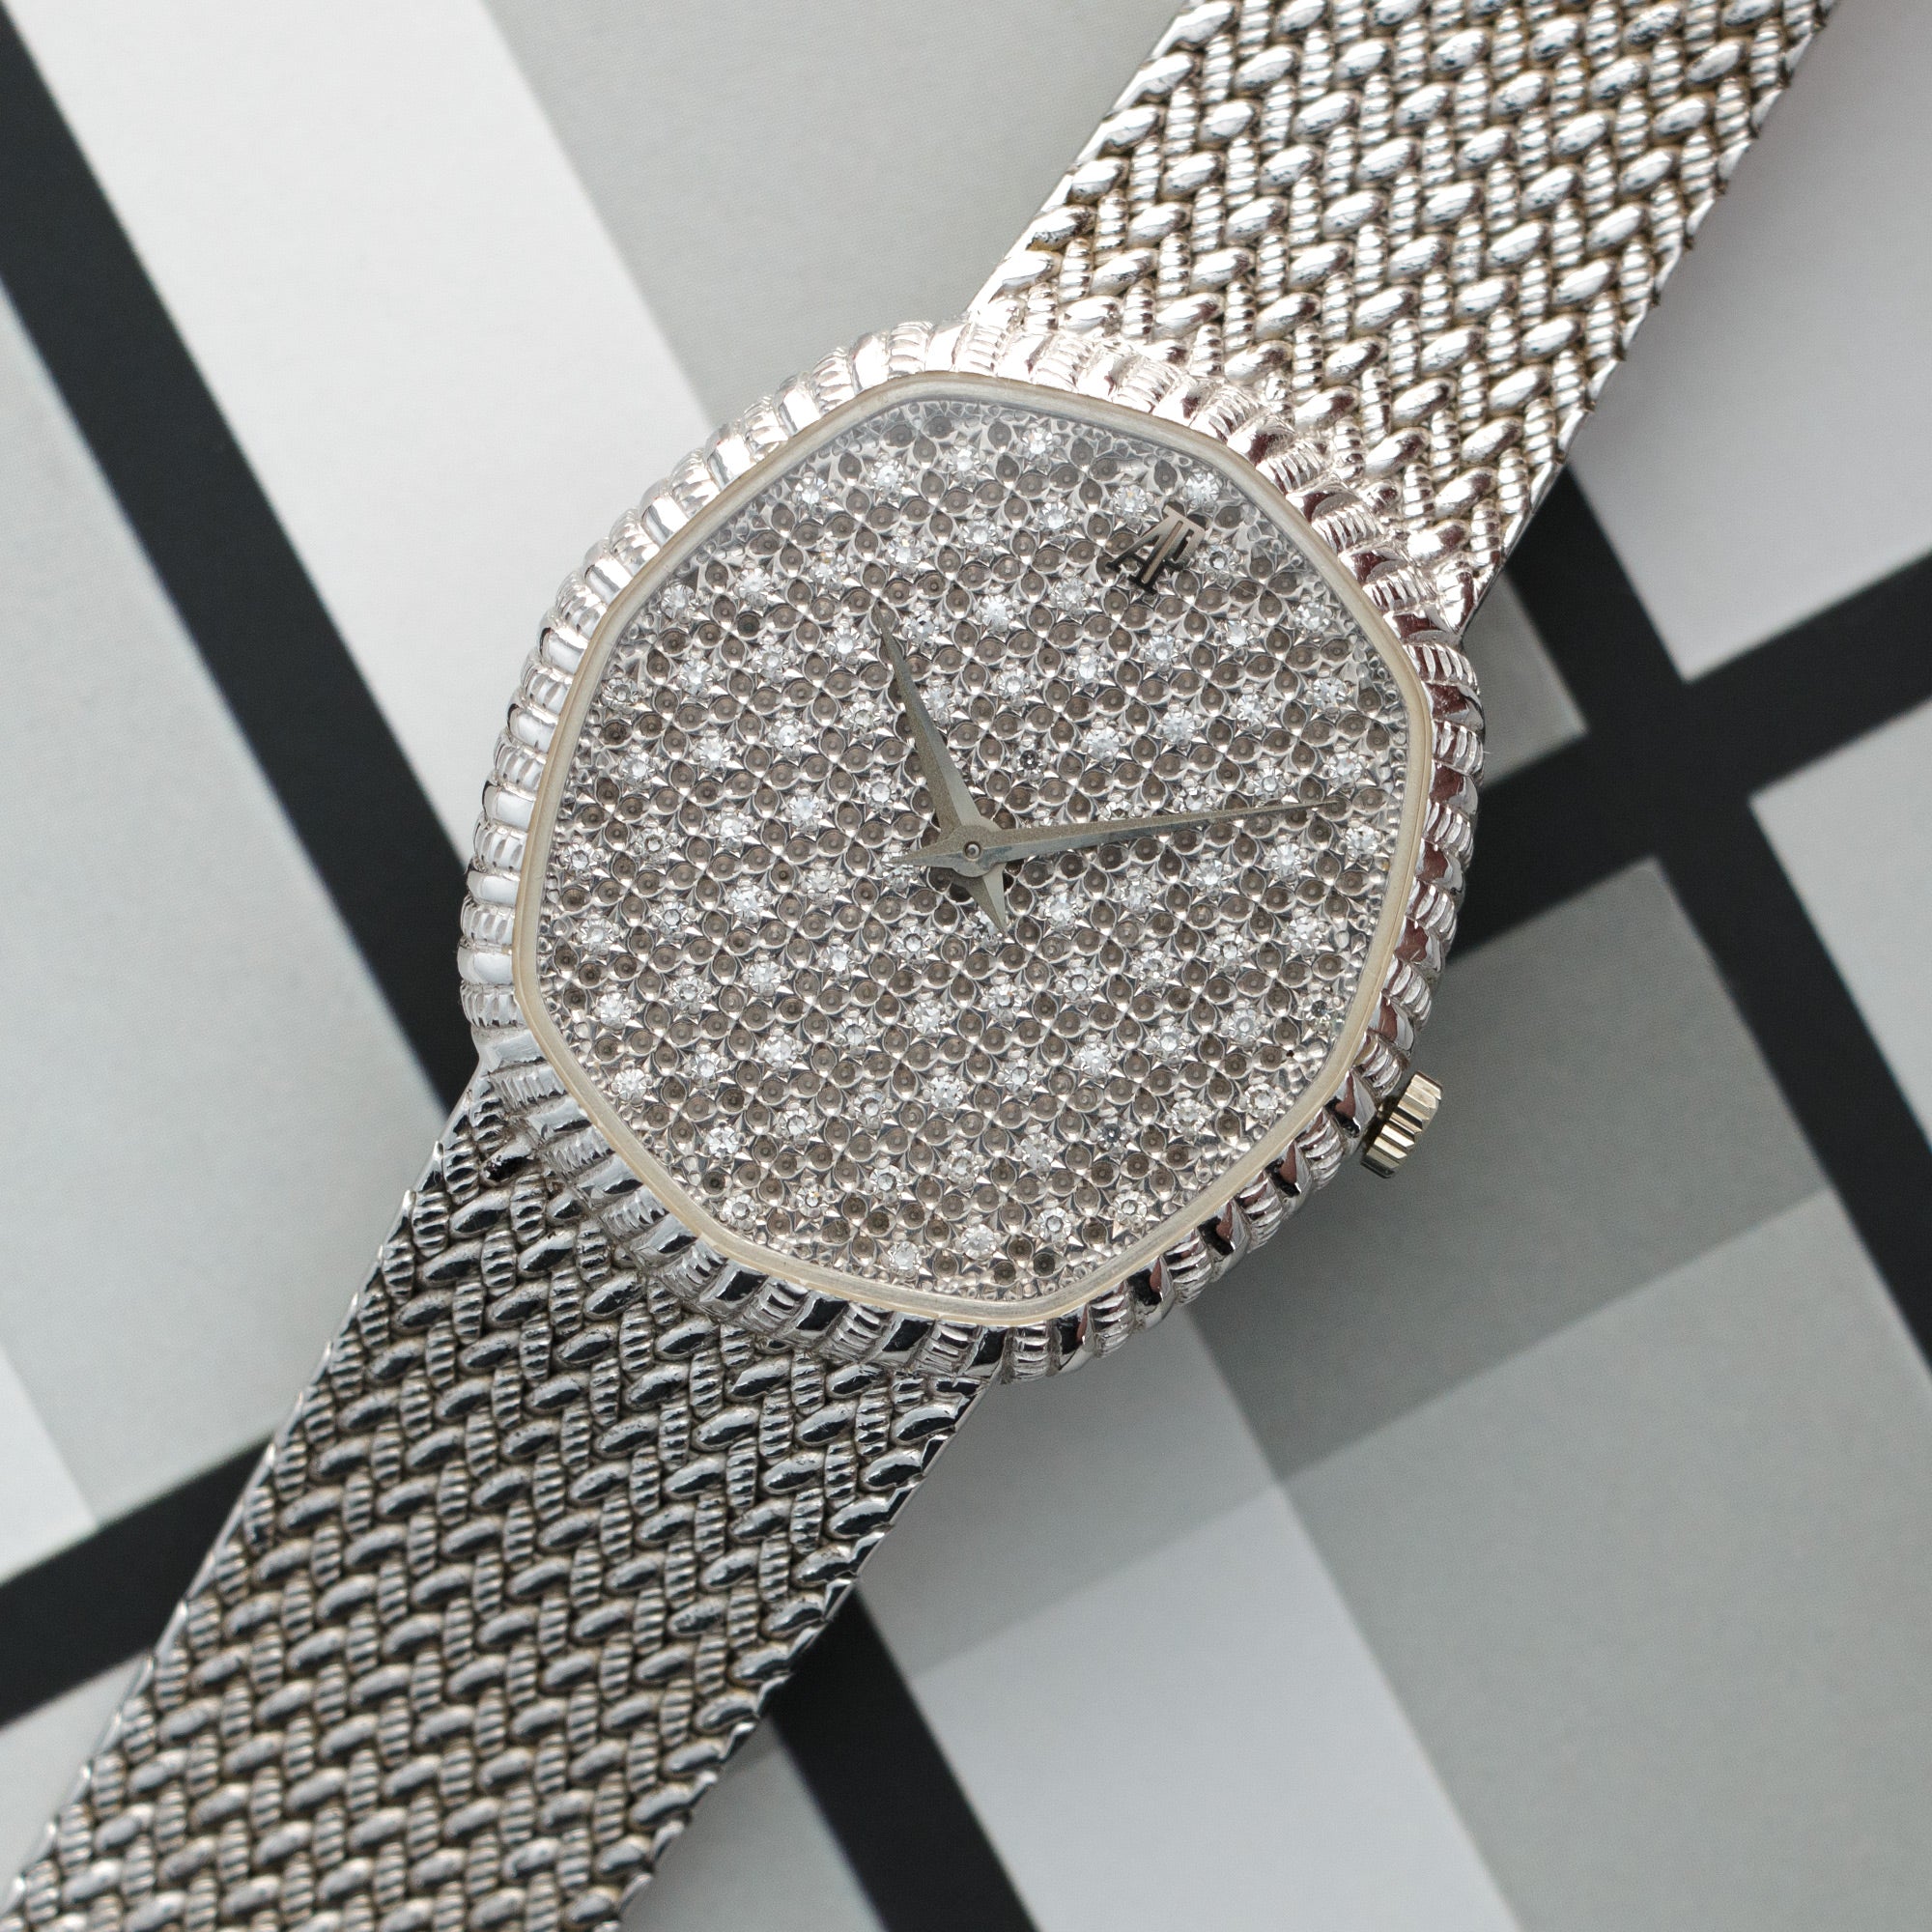 Audemars Piguet - Audemars Piguet White Gold Diamond Bracelet Watch - The Keystone Watches